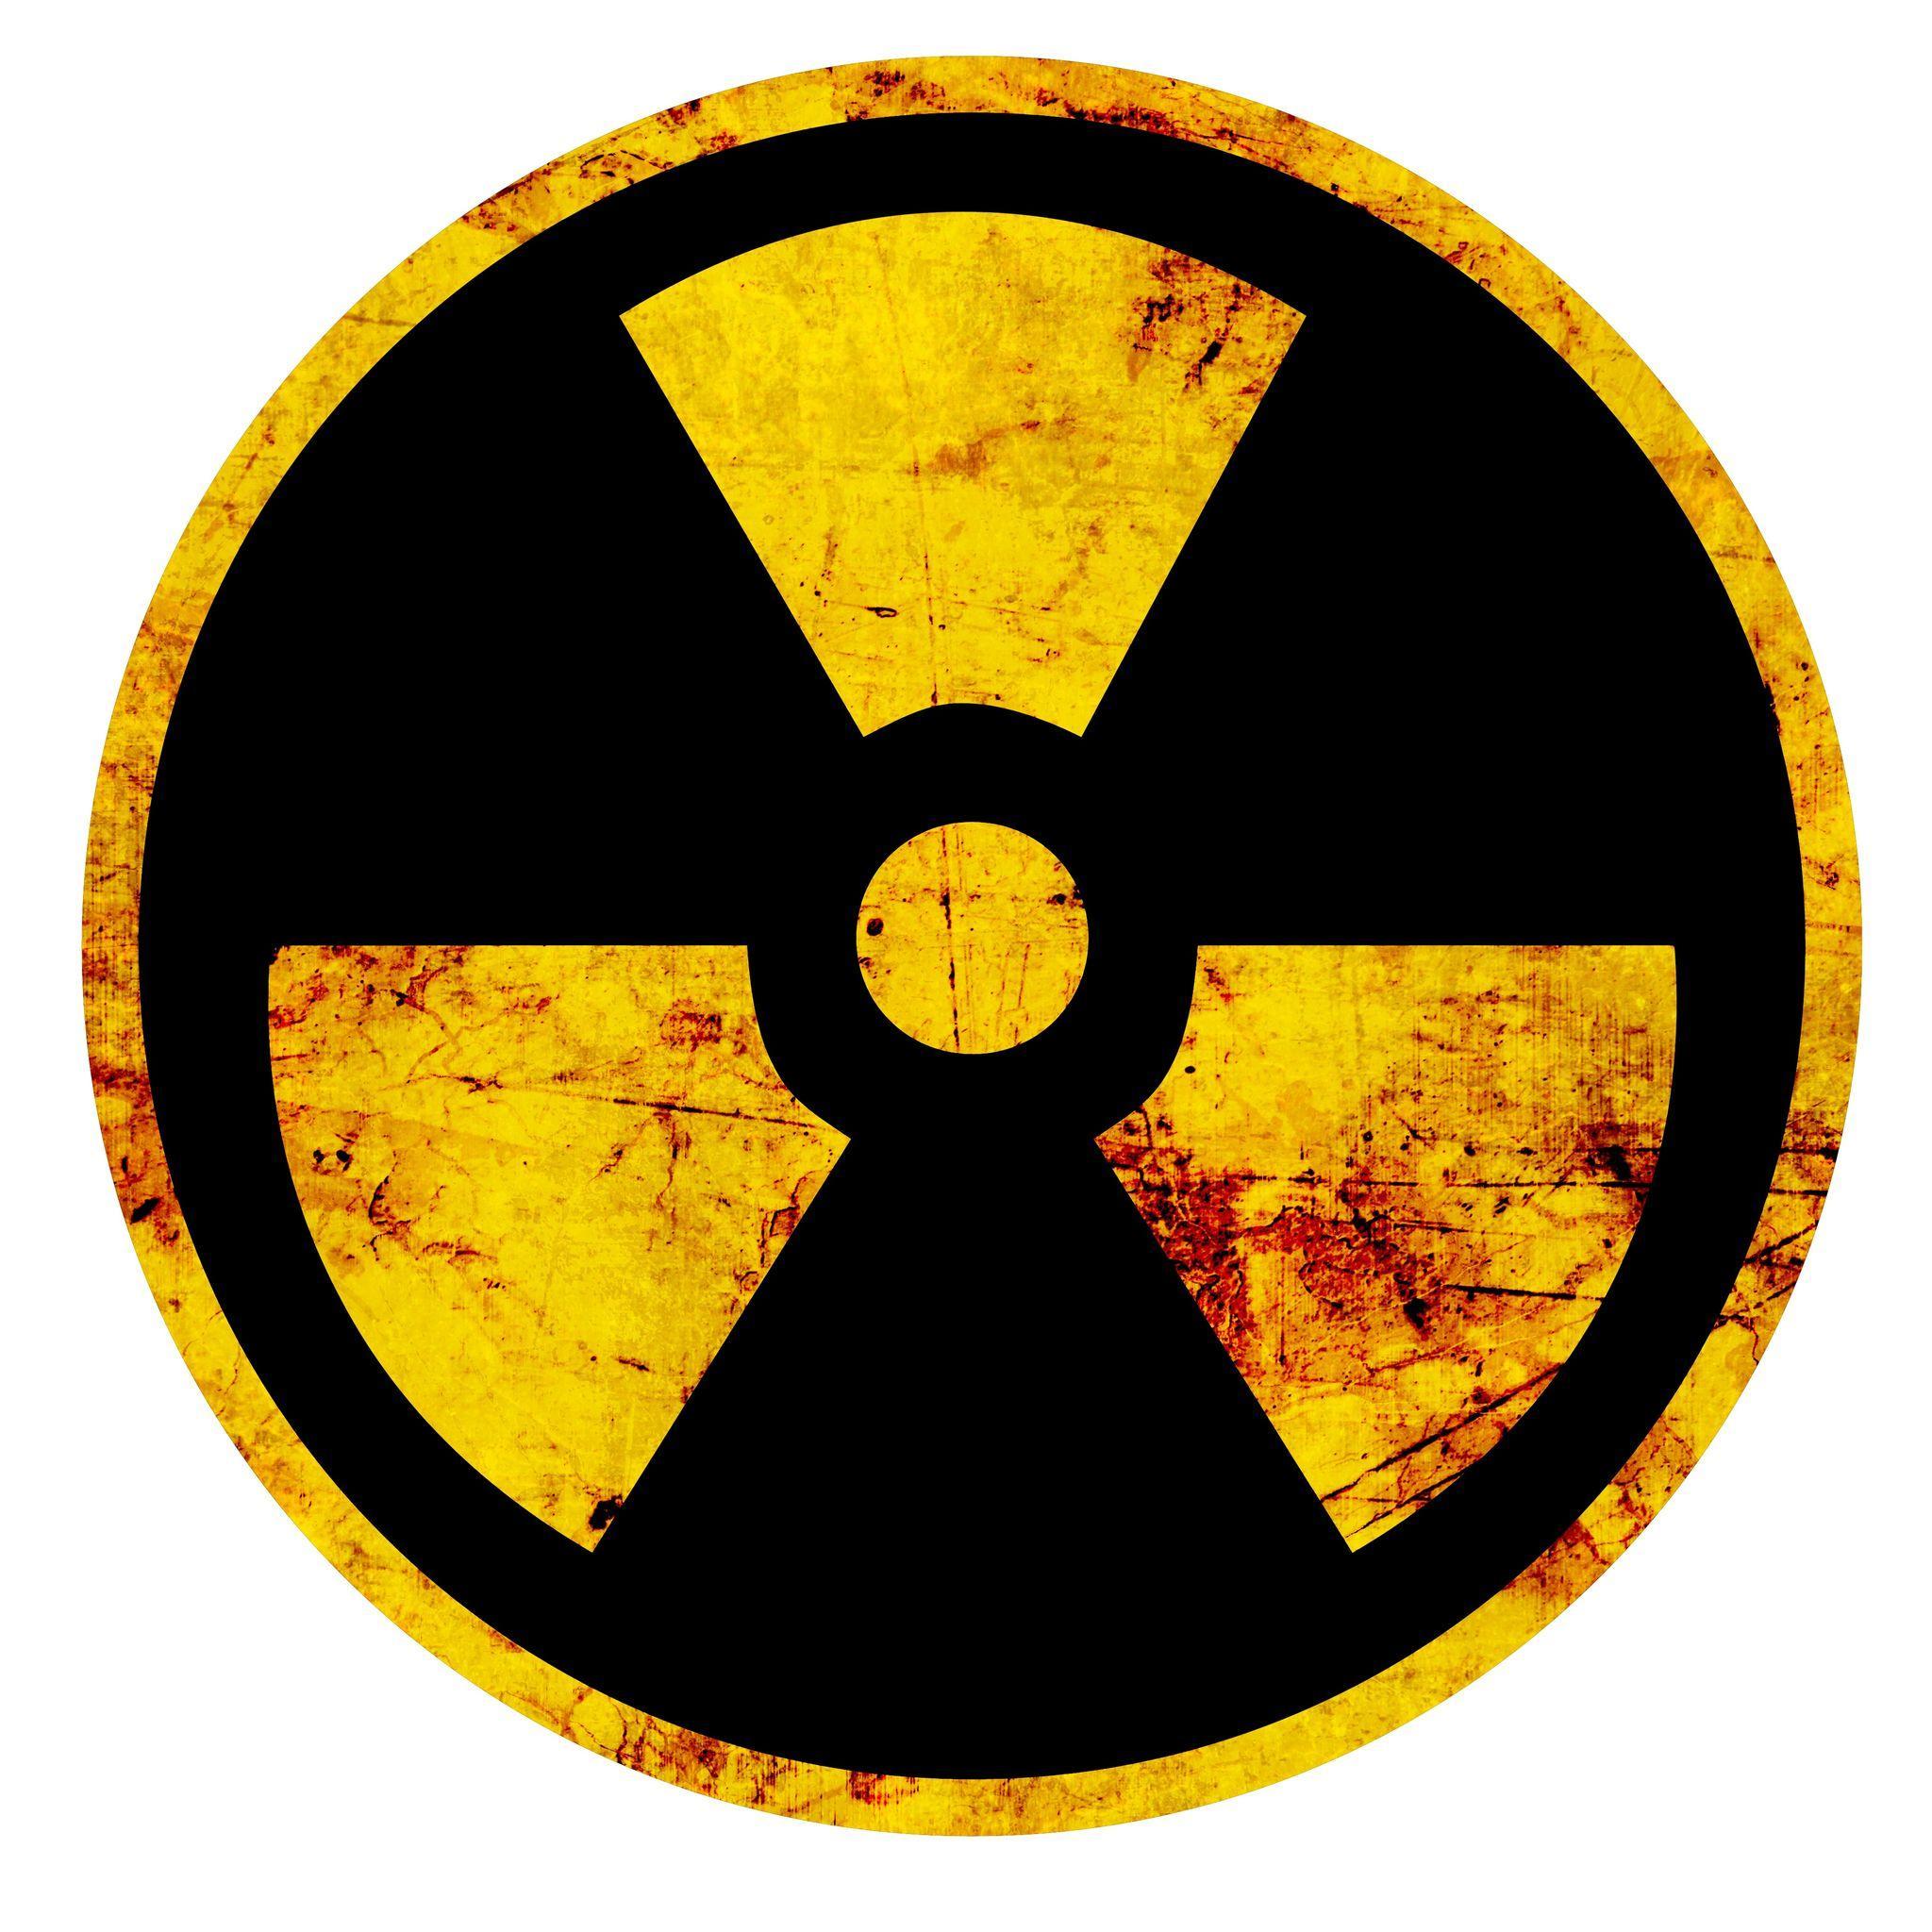 Памятка для населения в условиях радиоактивного загрязнения.